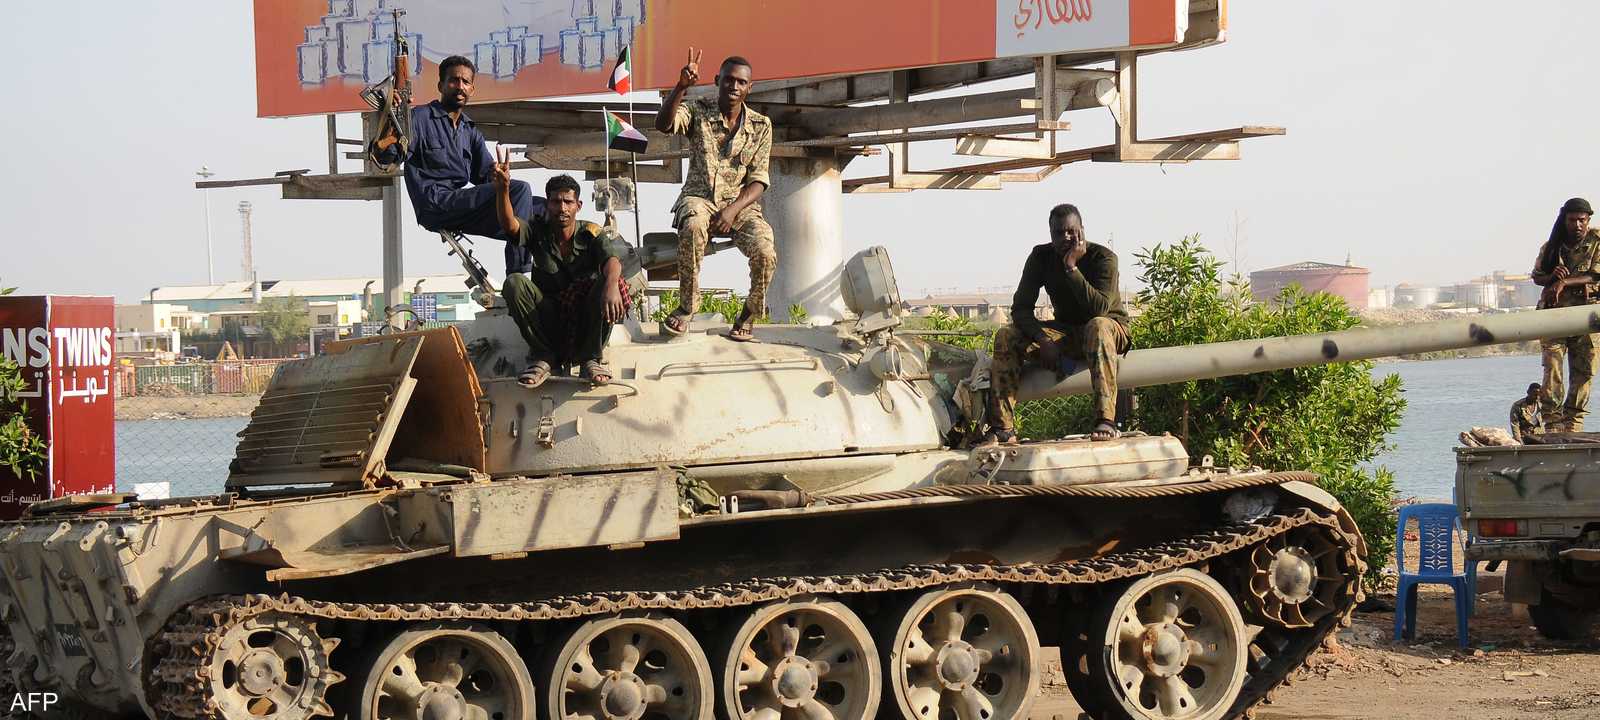 دبابة تابعة للجيش السوداني في بورتسودان